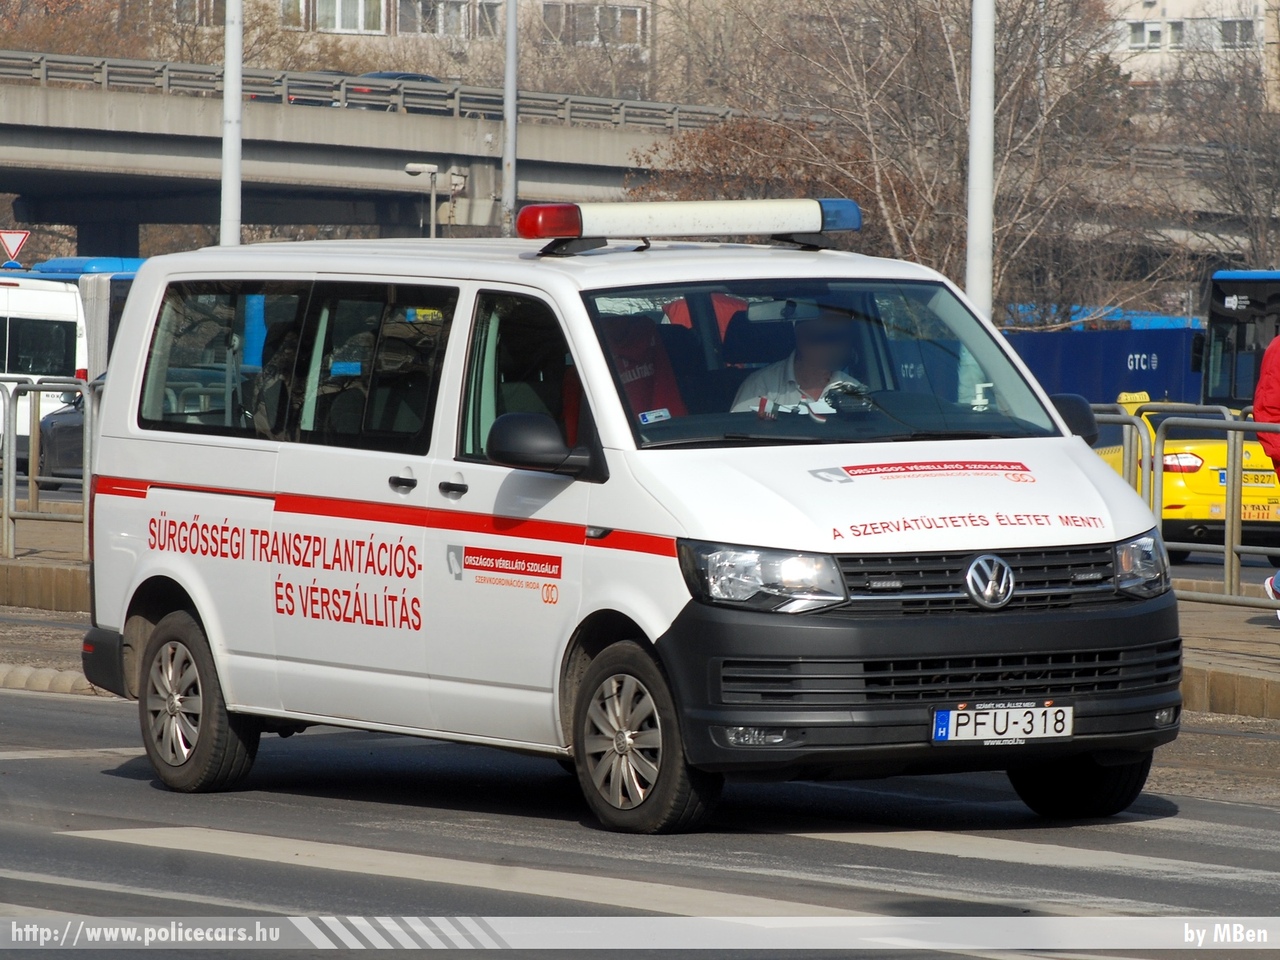 Volkswagen Transporter T5, Országos Vérellátó Szolgálat, fotó: MBen
Keywords: mentő magyar Magyarország mentőautó ambulance Hungary hungarian PFU-318